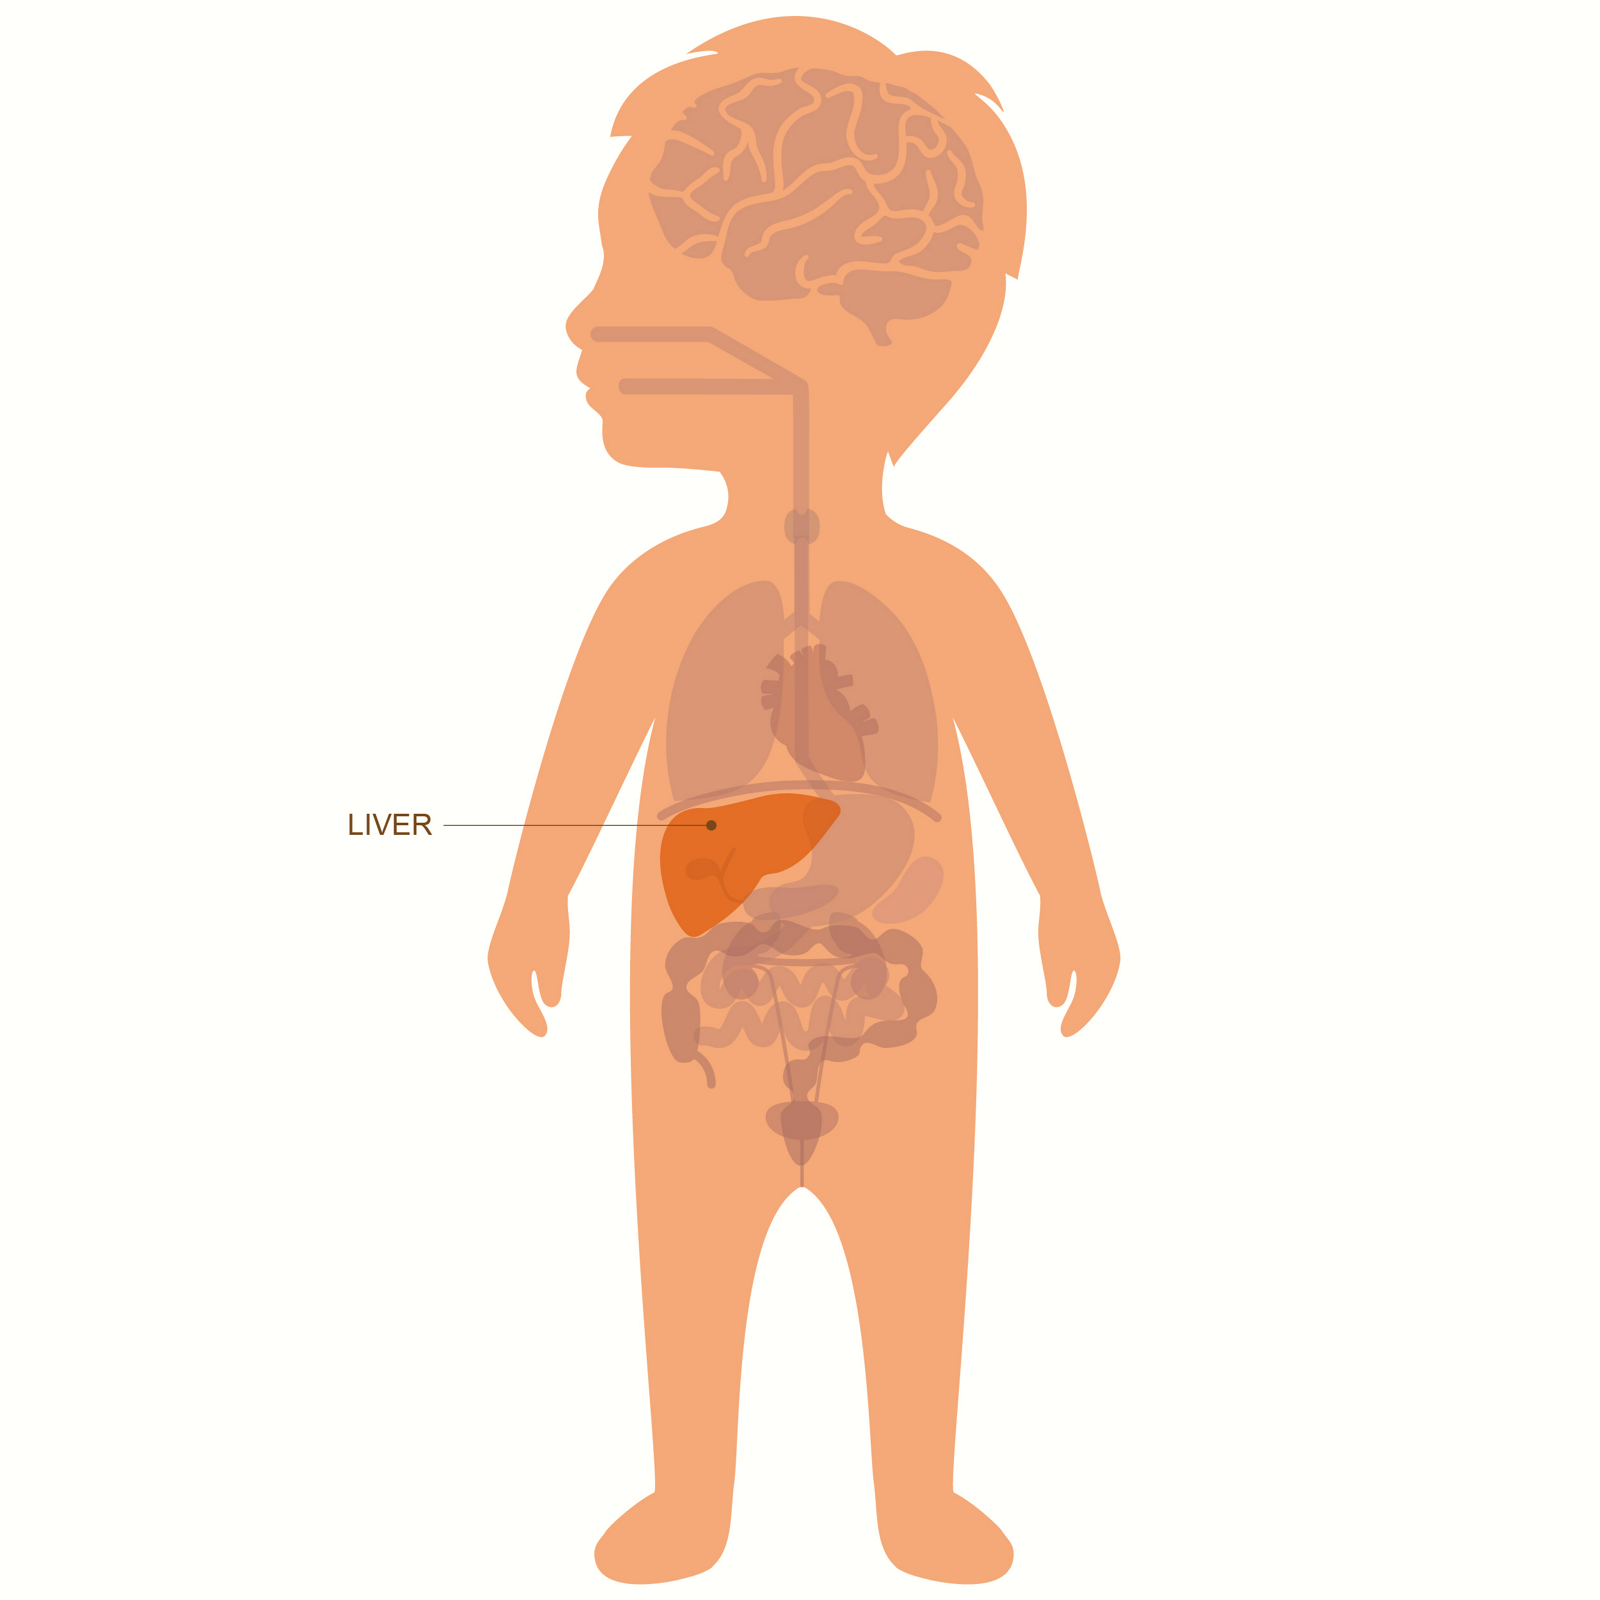 На изображении маленького ребенка выделена и обозначена на схеме органов печень